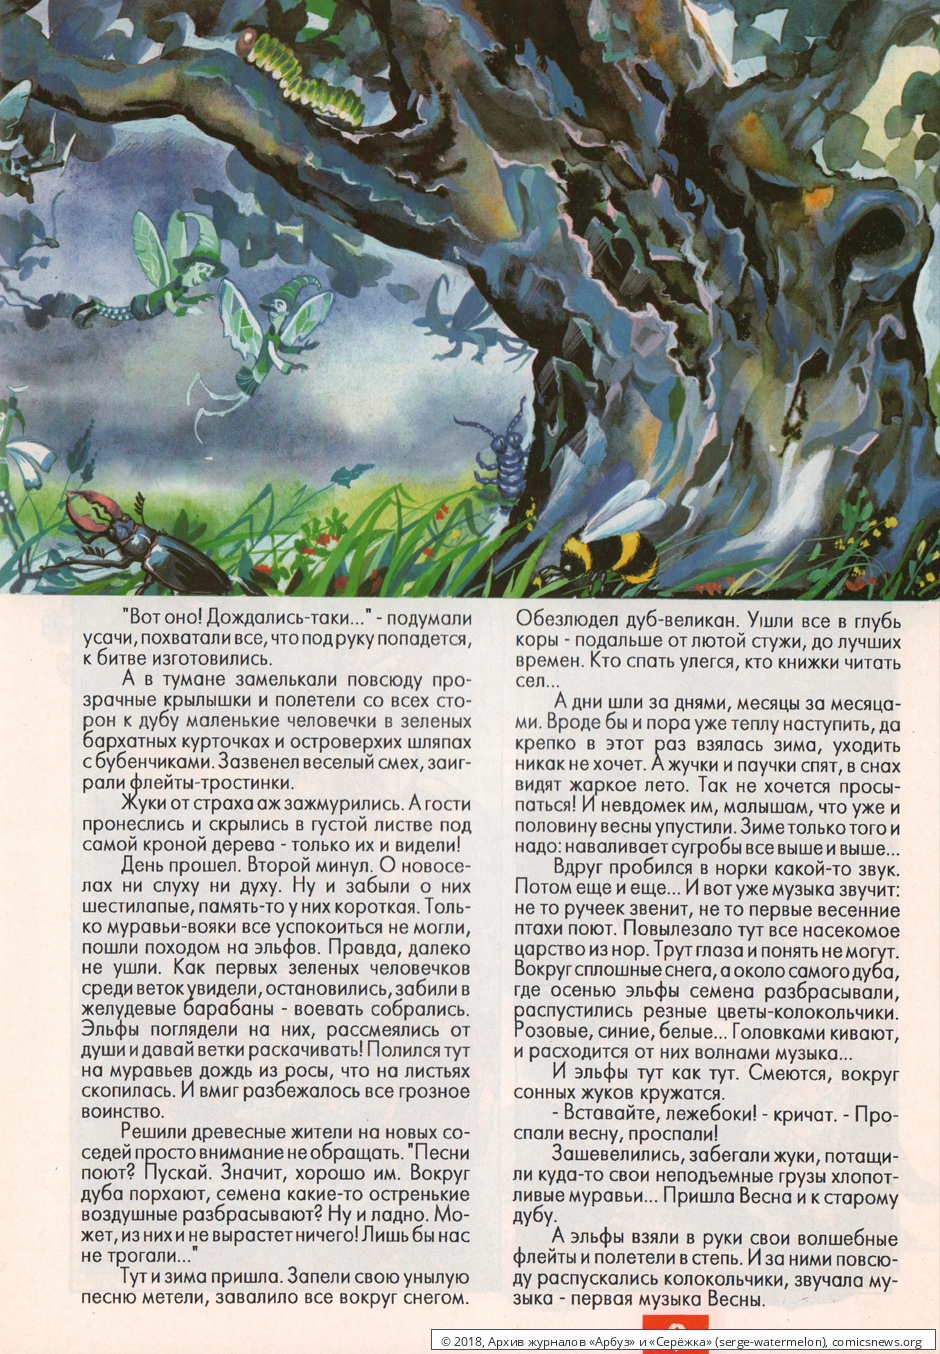 № 34 ( "Арбуз" № 8 / 1997 ) - Архив журналов «Арбуз» и «Серёжка»